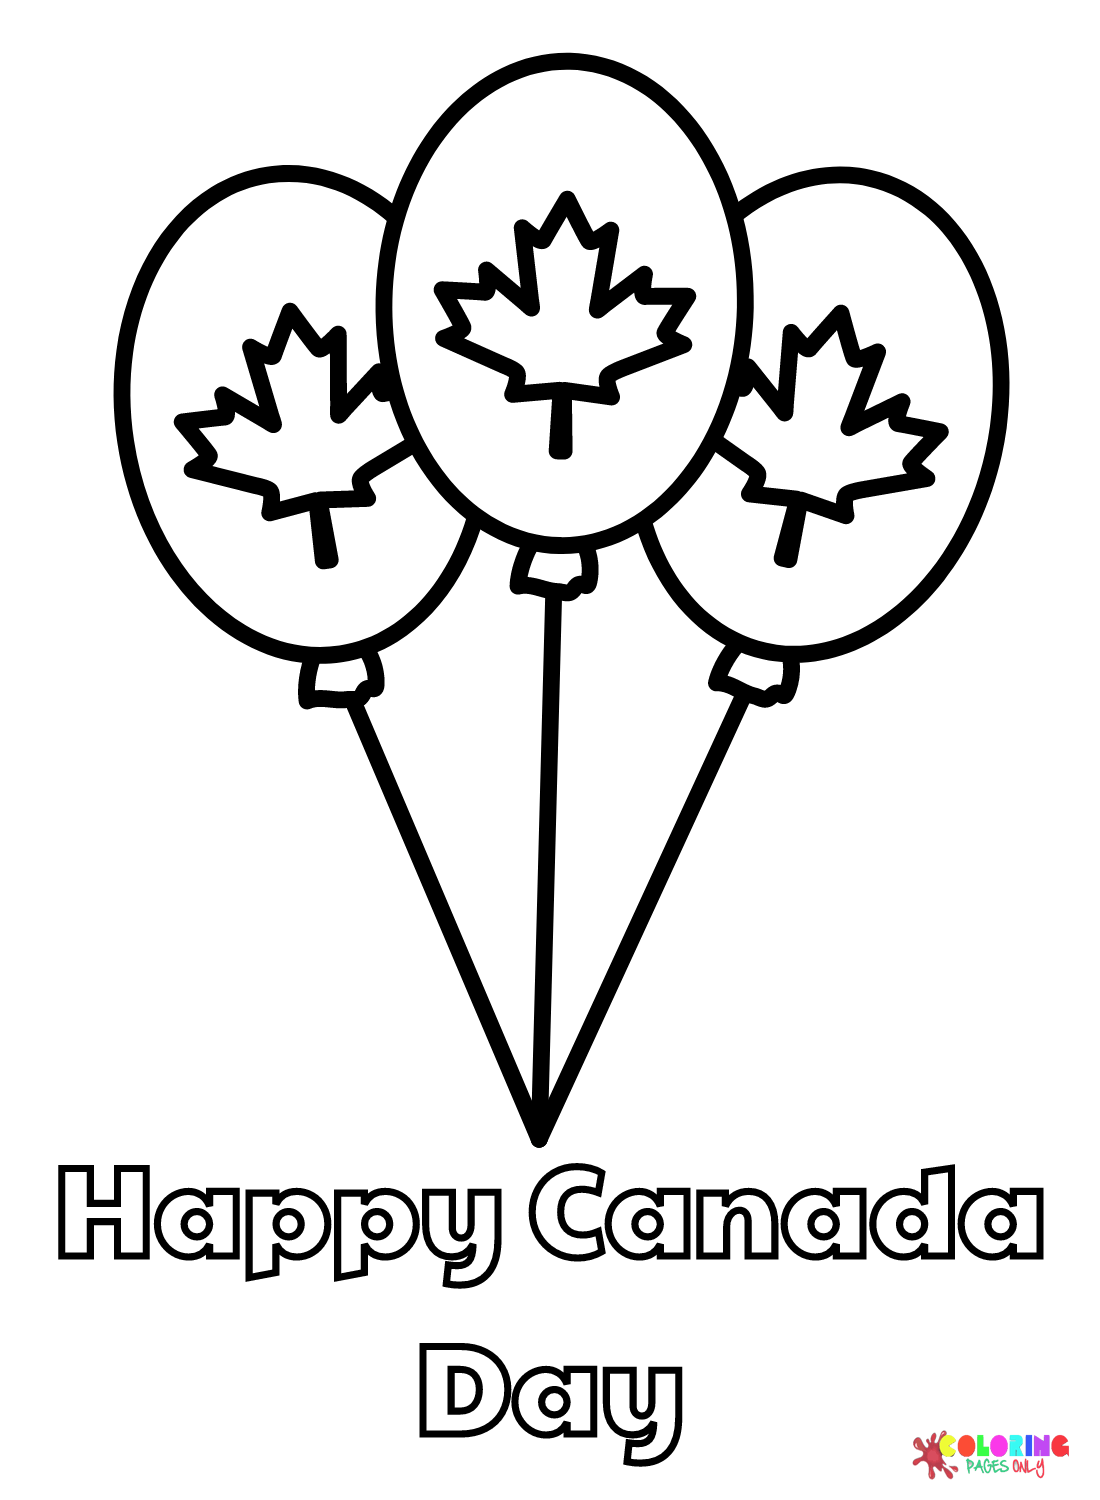 يوم كندا سعيد مع بالونات من يوم كندا